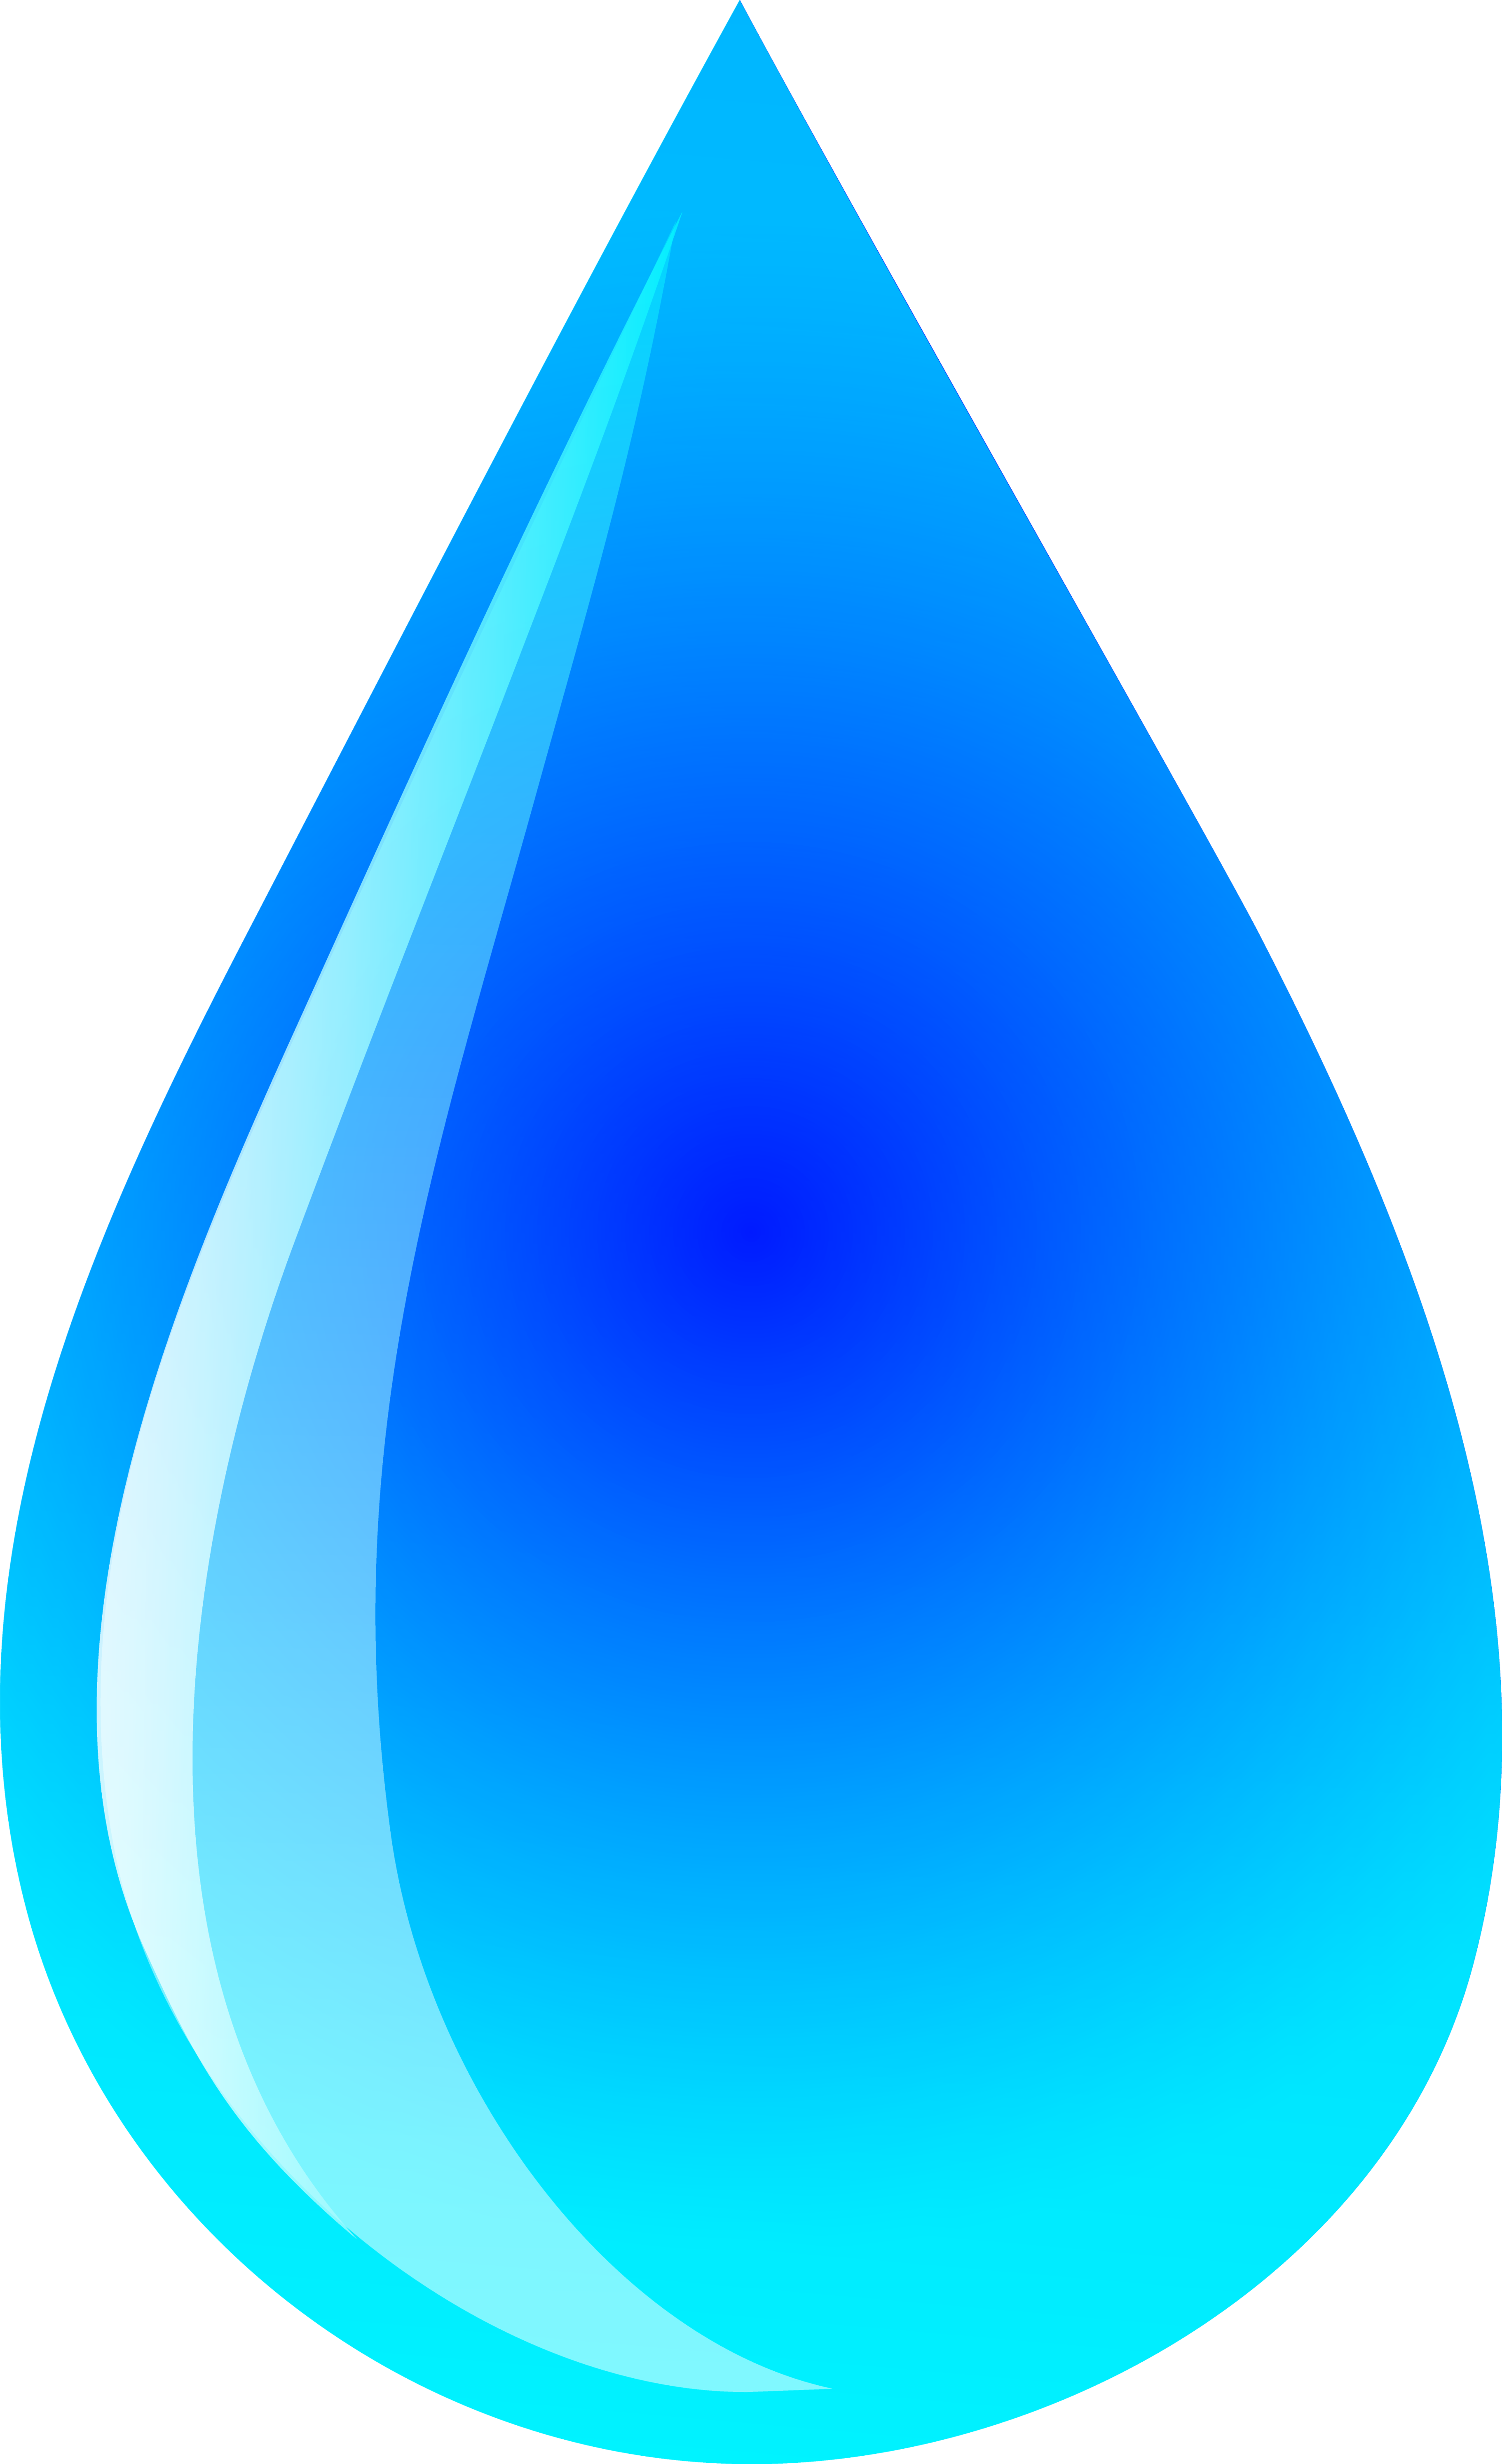 Water Drop Vector Free - ClipArt Best